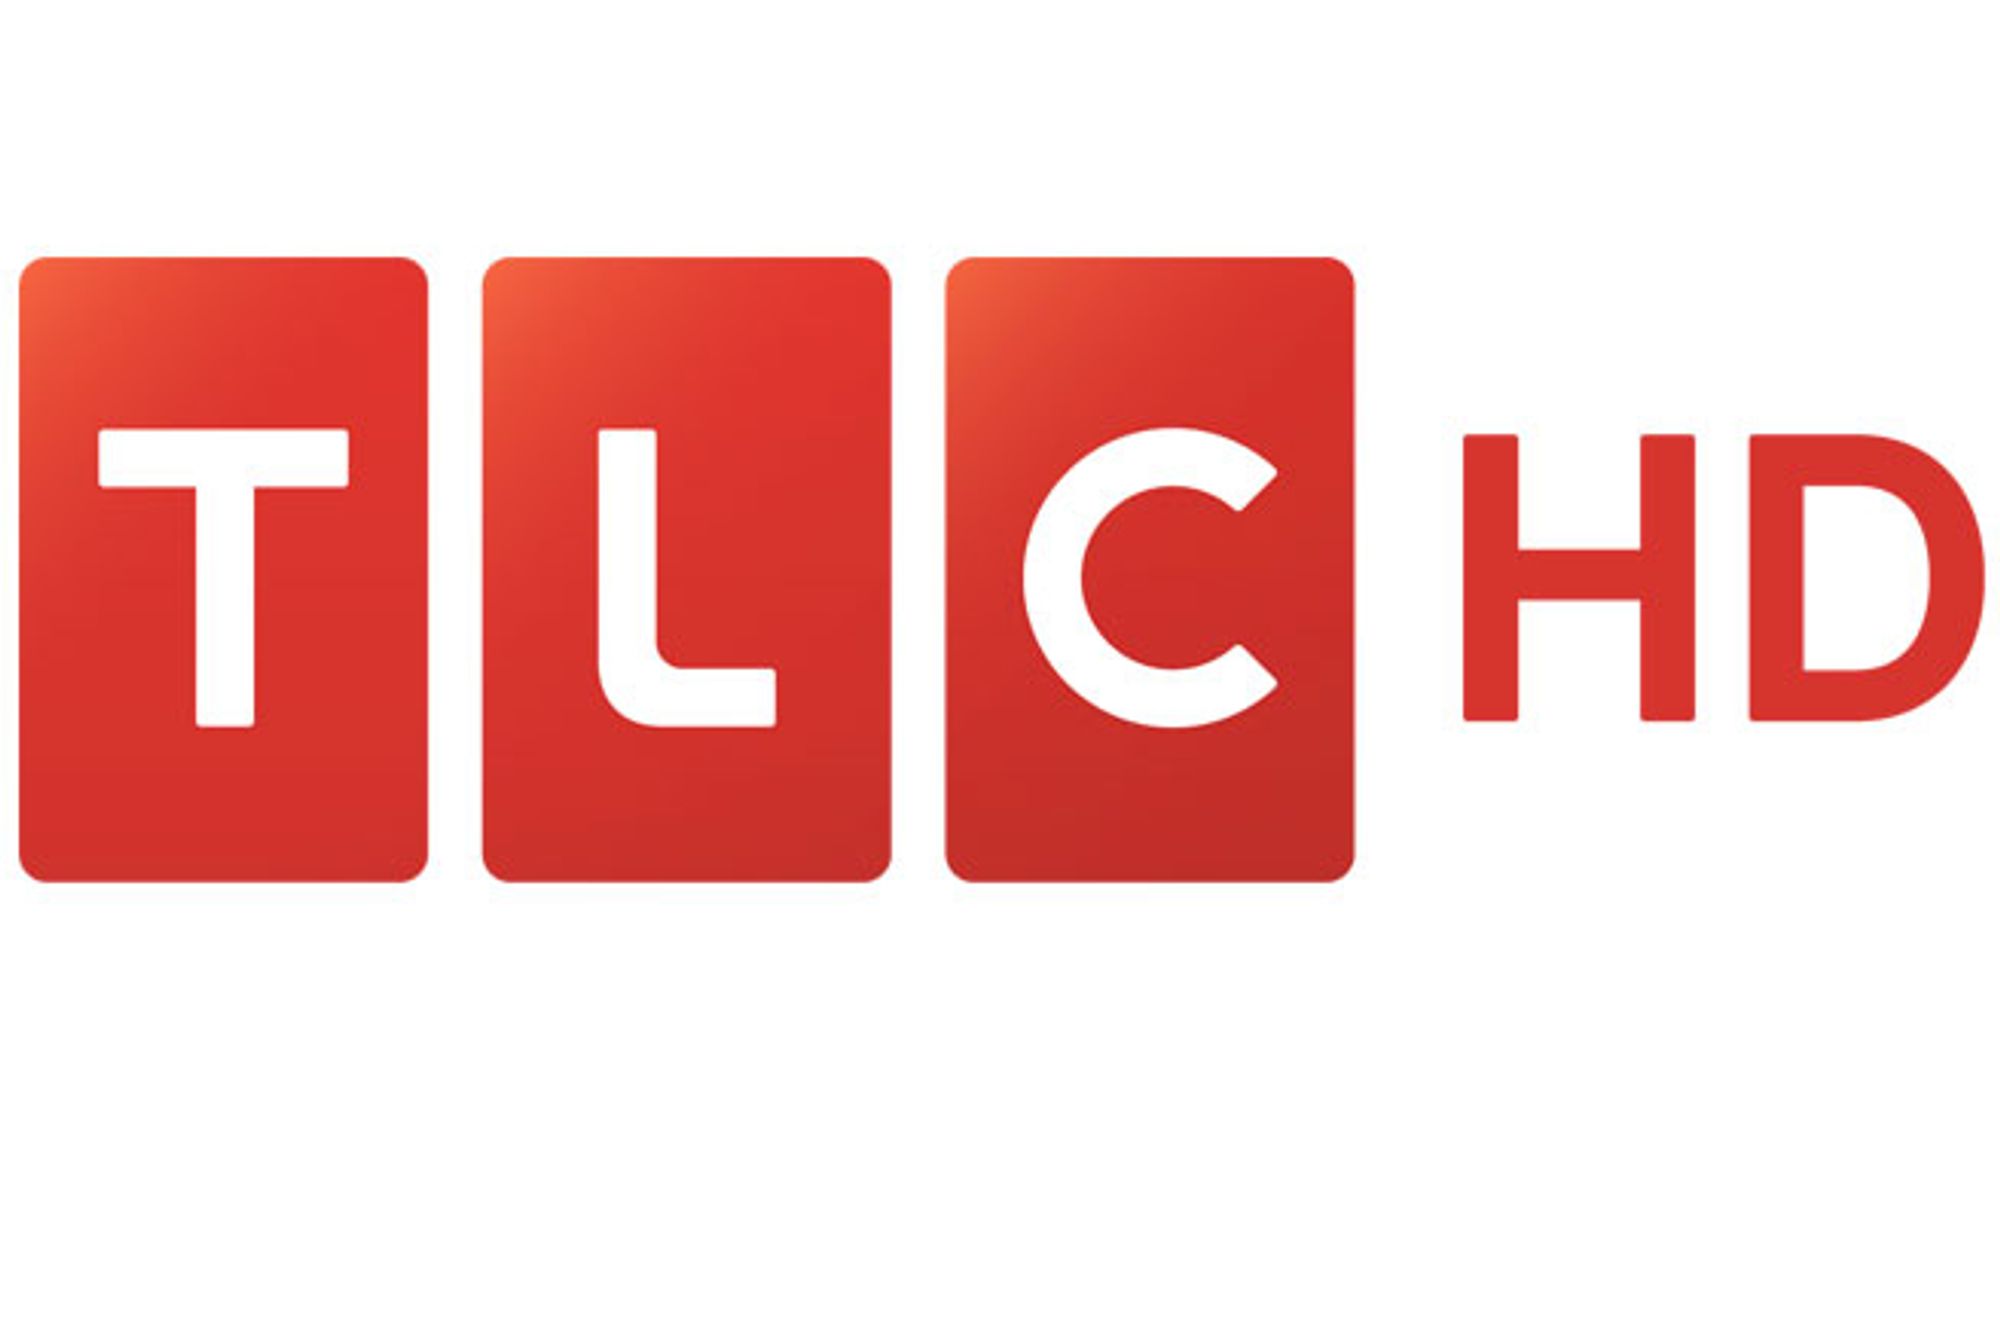 tlc_hd logo.jpg